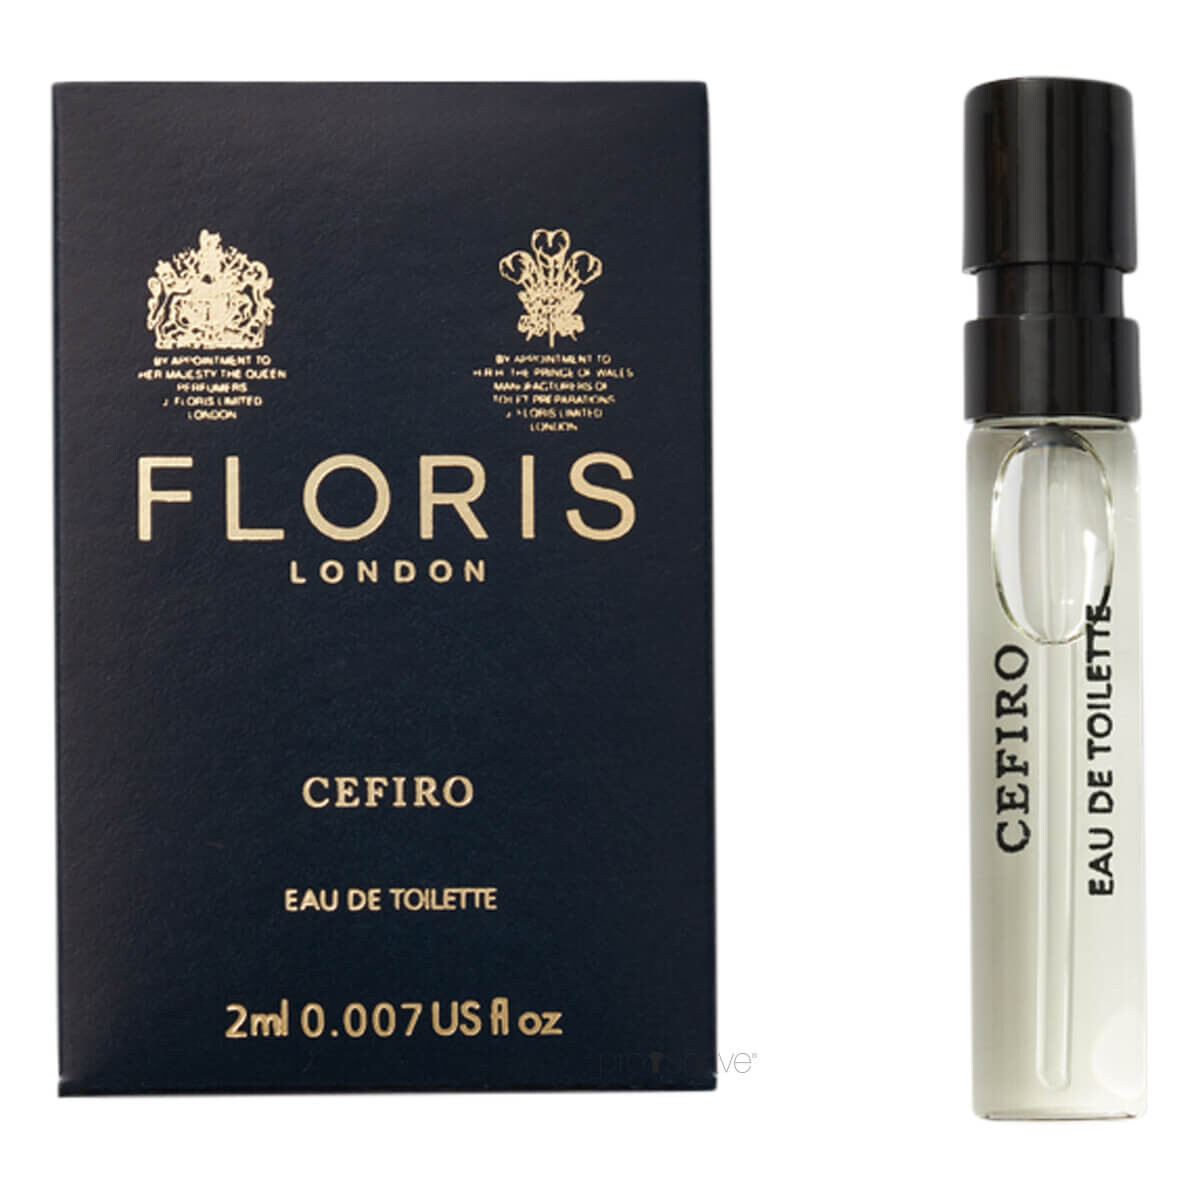 10: Floris Cefiro, Eau de Toilette, DUFTPRØVE, 2 ml.